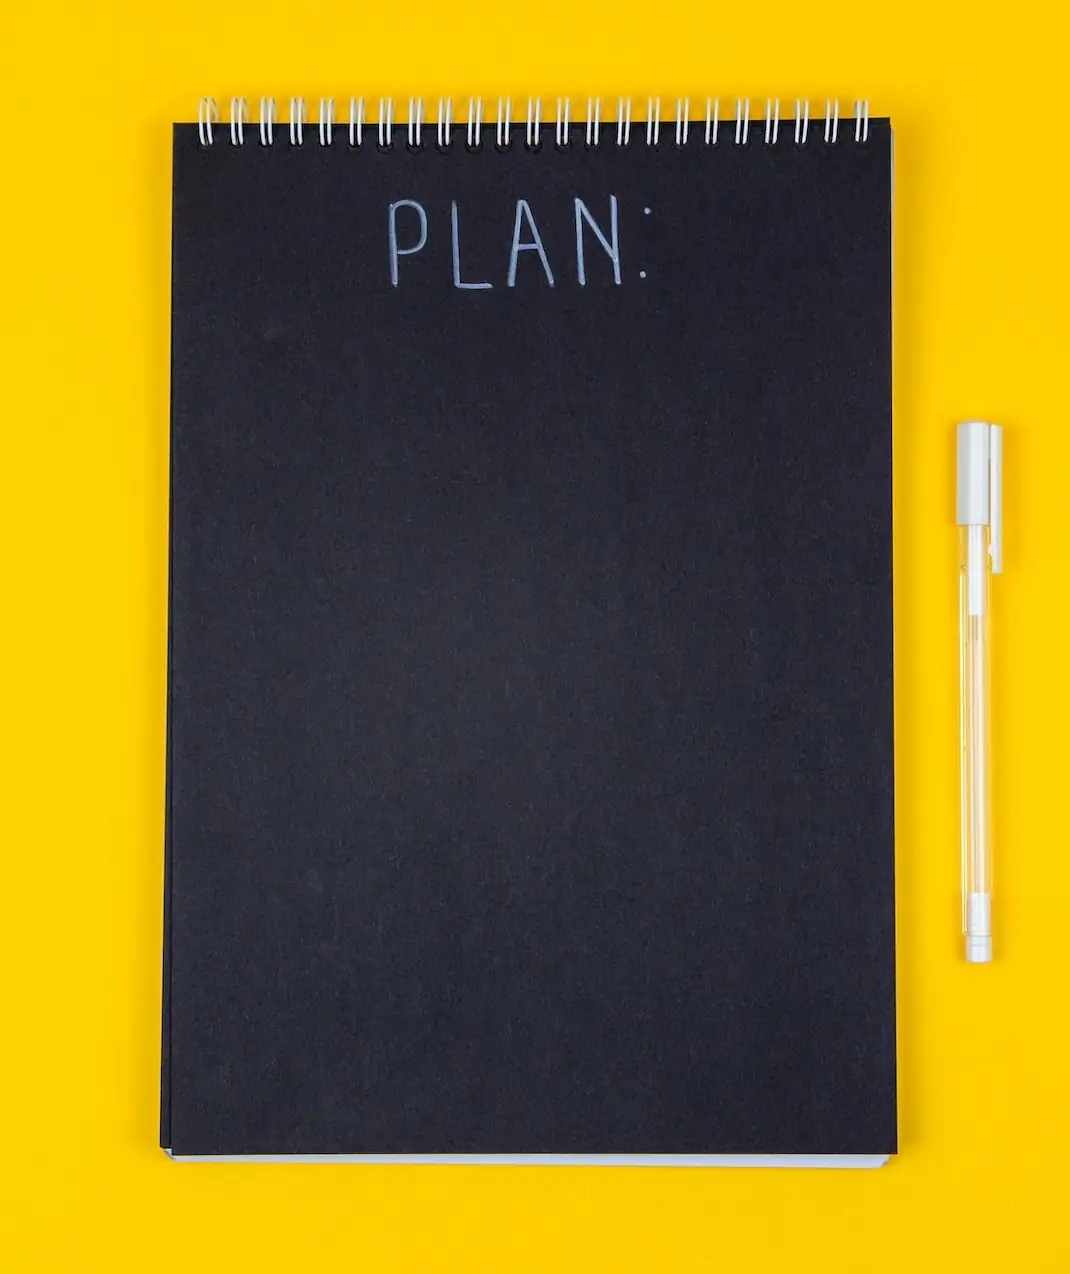 Schwarzer Ringblock und weißer Stift vor gelbem Hintergrund. Aufschrift „Plan“.